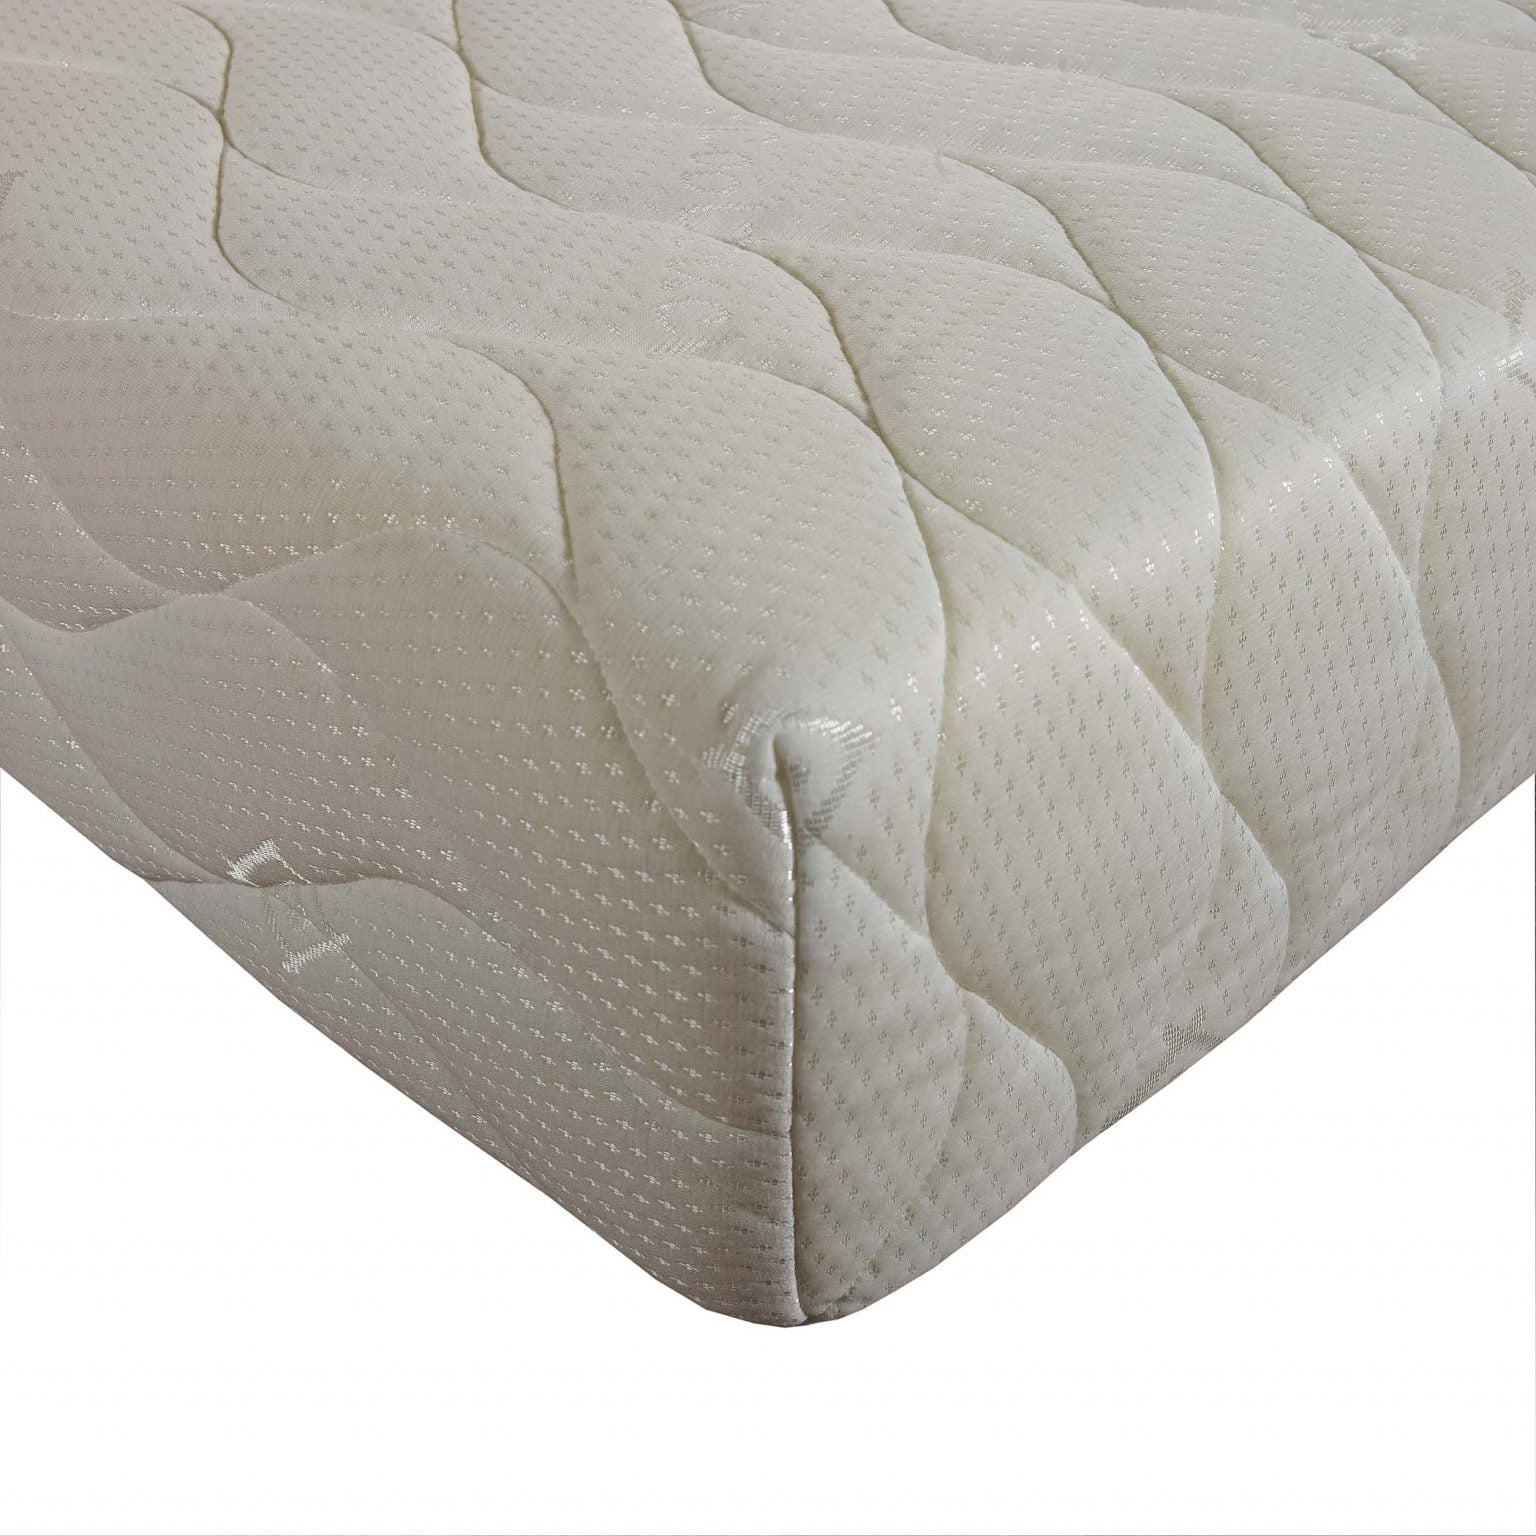 Deluxe Plus Memory Foam Mattress - Ultimate Comfort Sleep